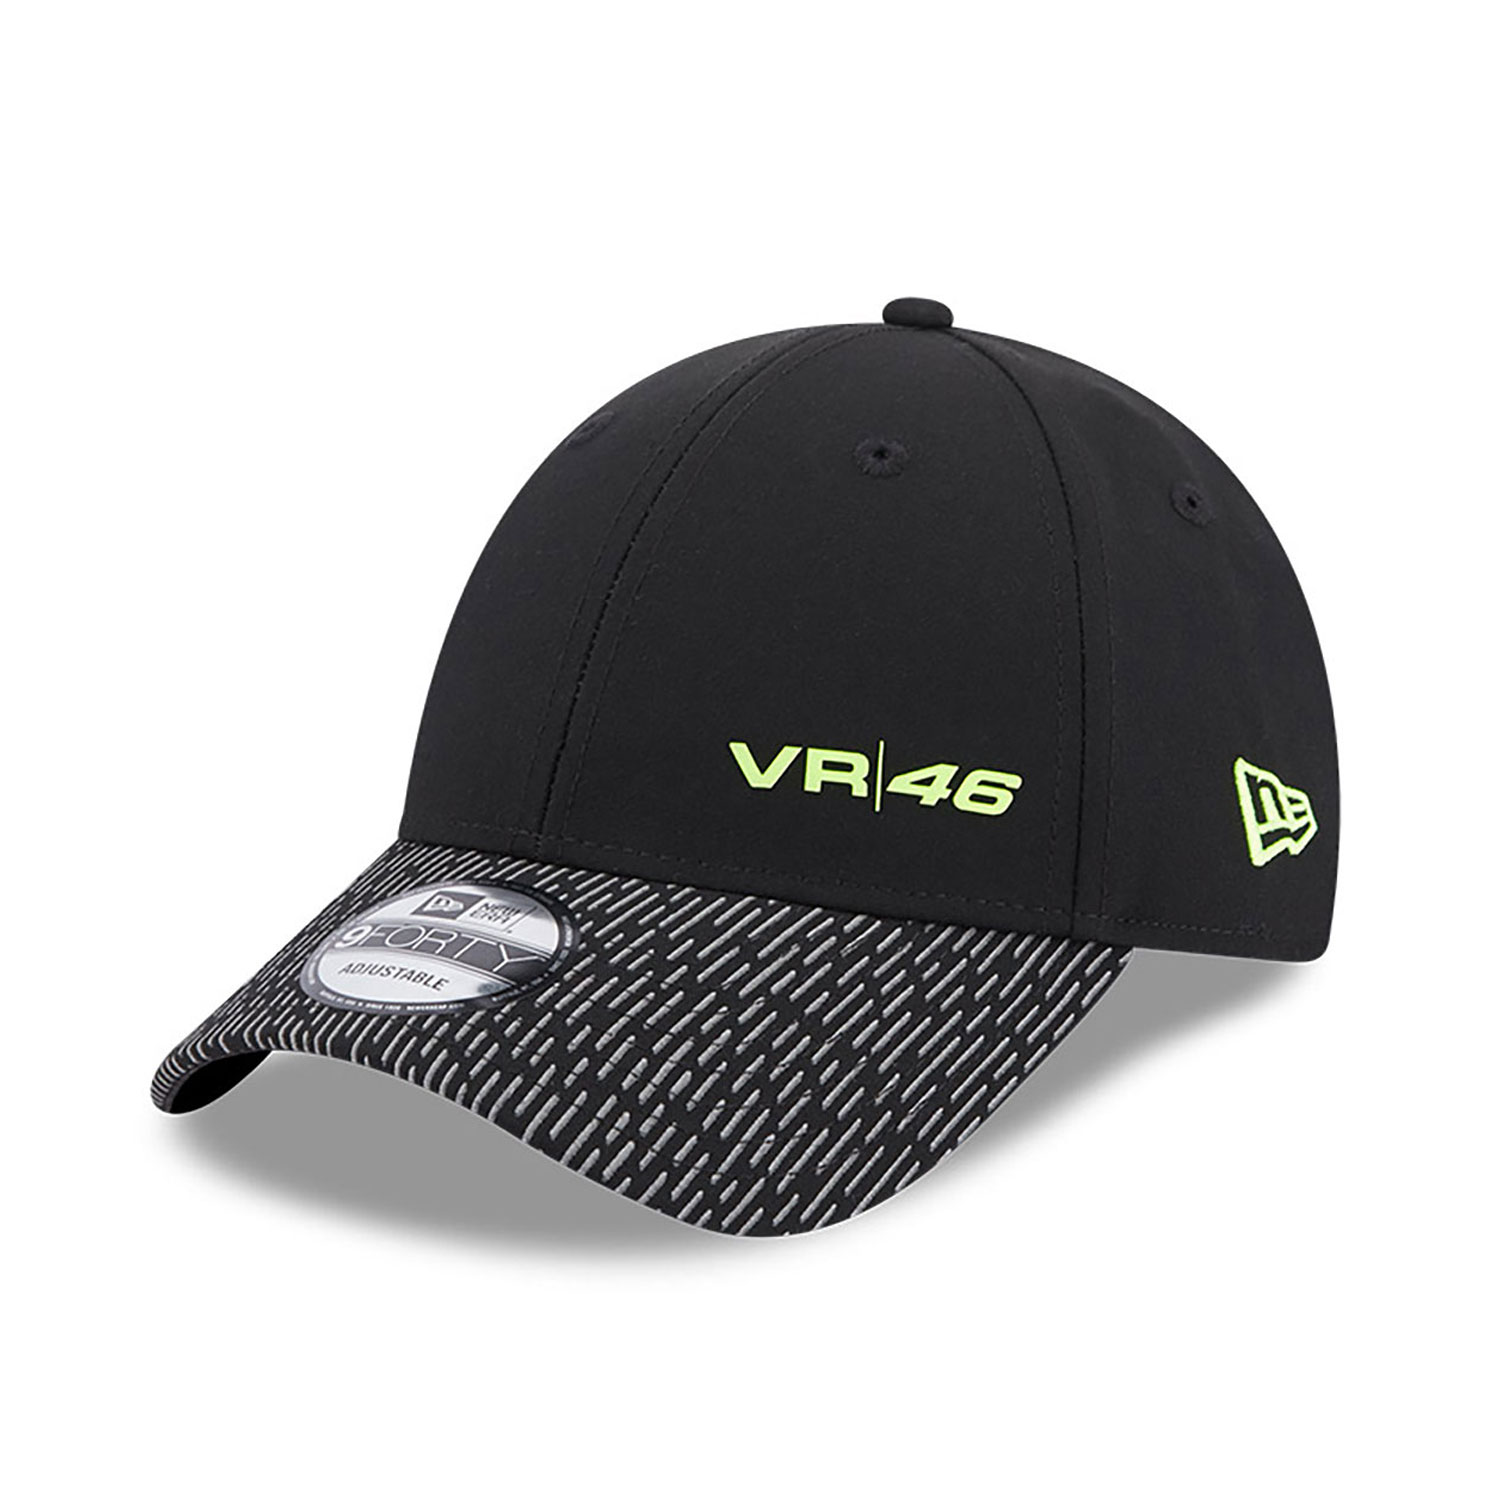 VR46 Reflective Black 9FORTY Adjustable Cap